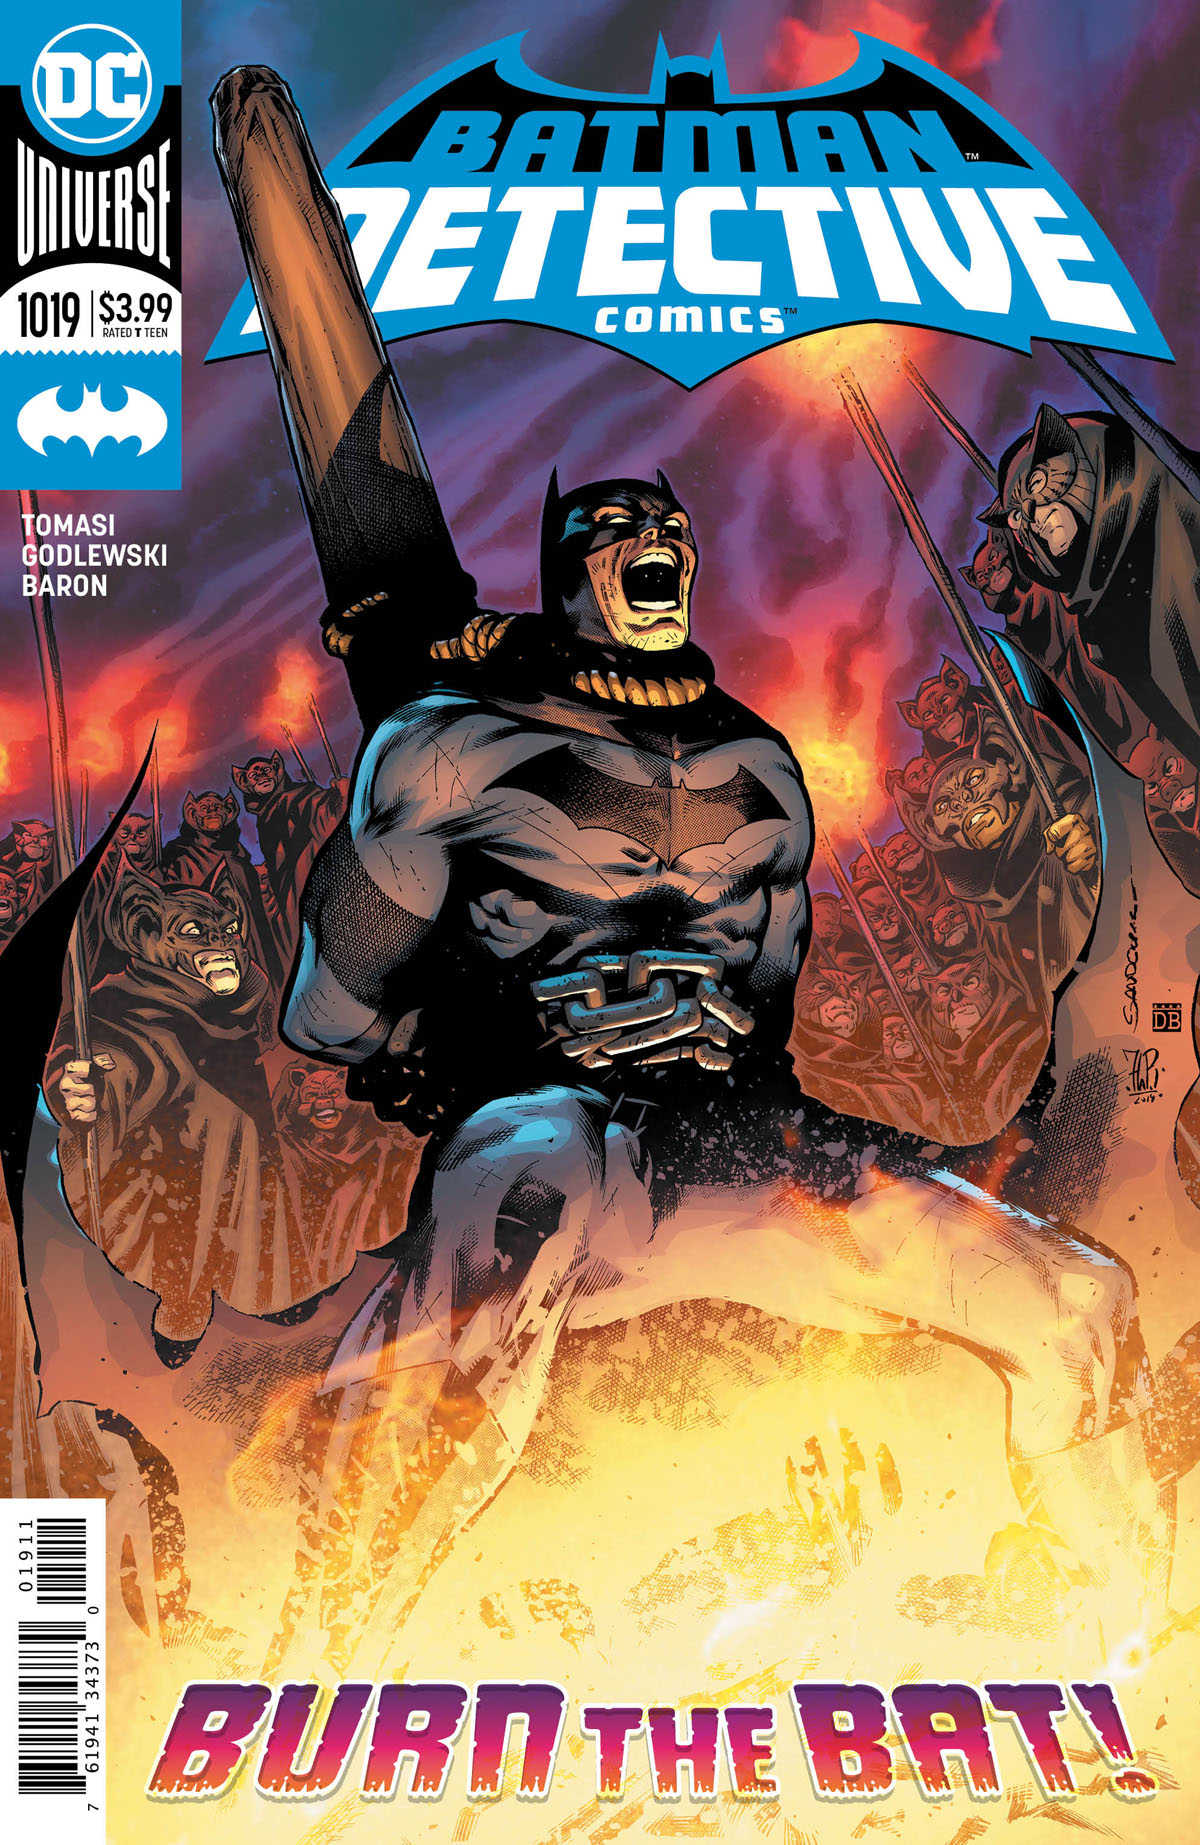 Detective Comics #1019 cover